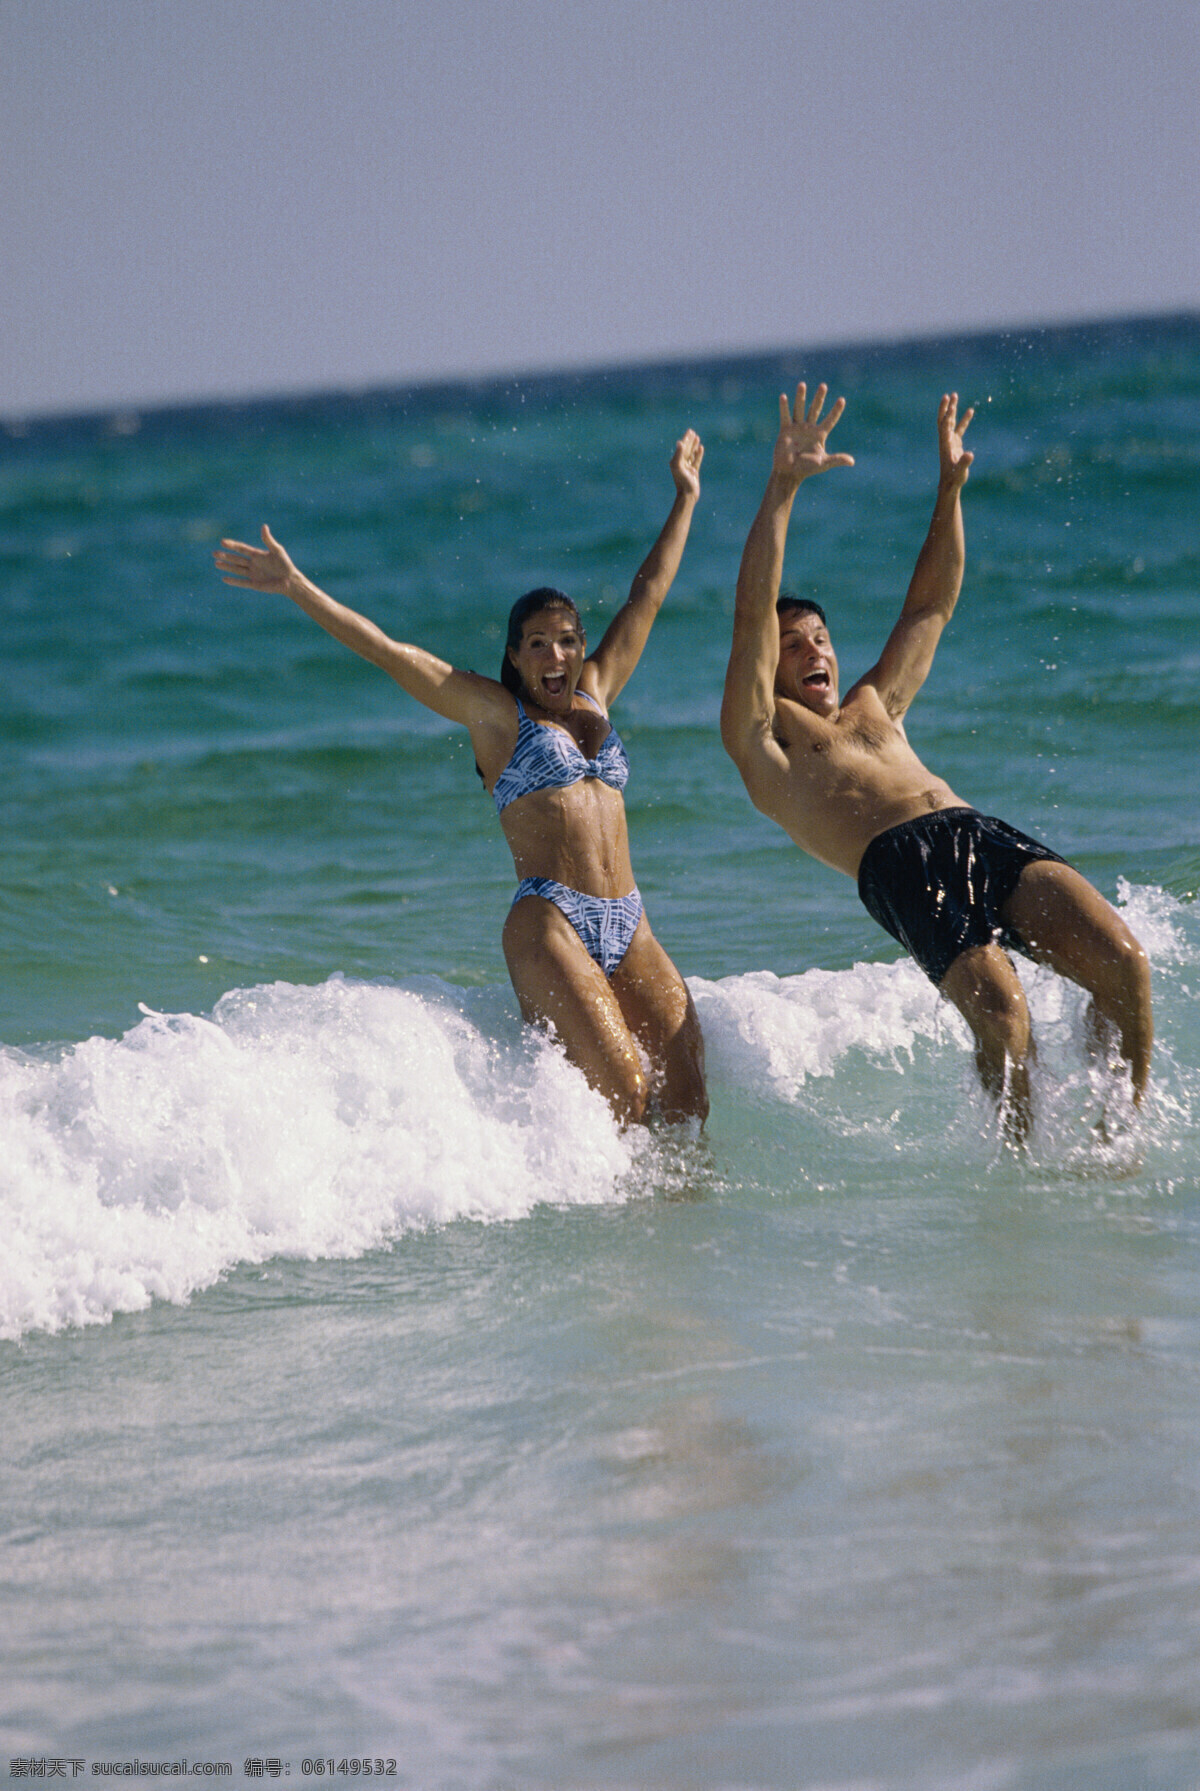 海滩 上 玩耍 外国 夫妇 海边人物 沙滩 外国男性 男人 女性 女人 外国夫妻 海浪 浪花 比基尼美女 生活人物 人物图片